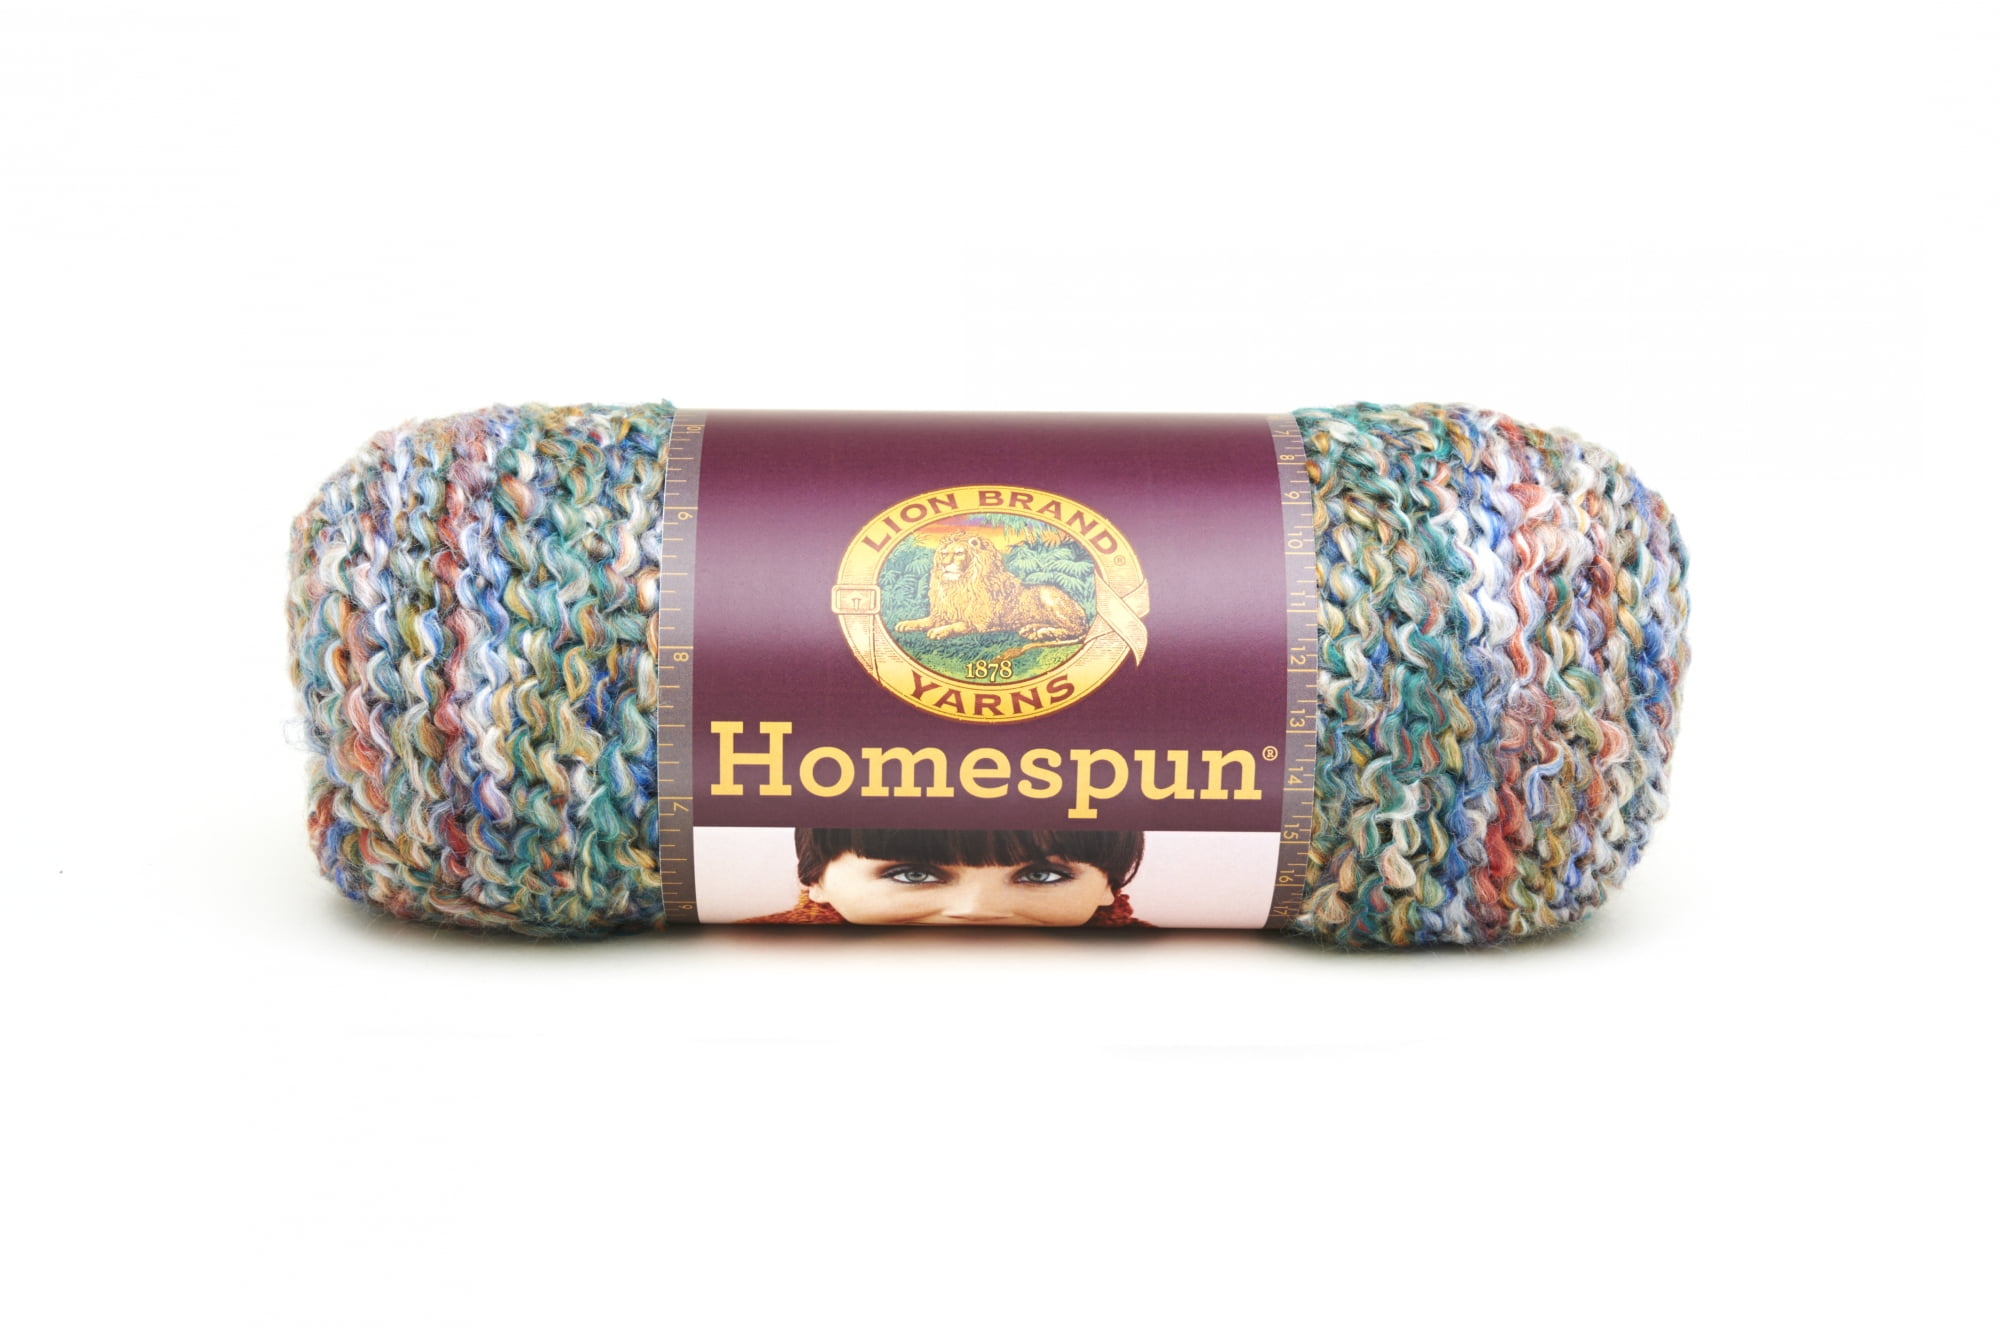 LB Homespun New Look - Crochet Stores Inc.